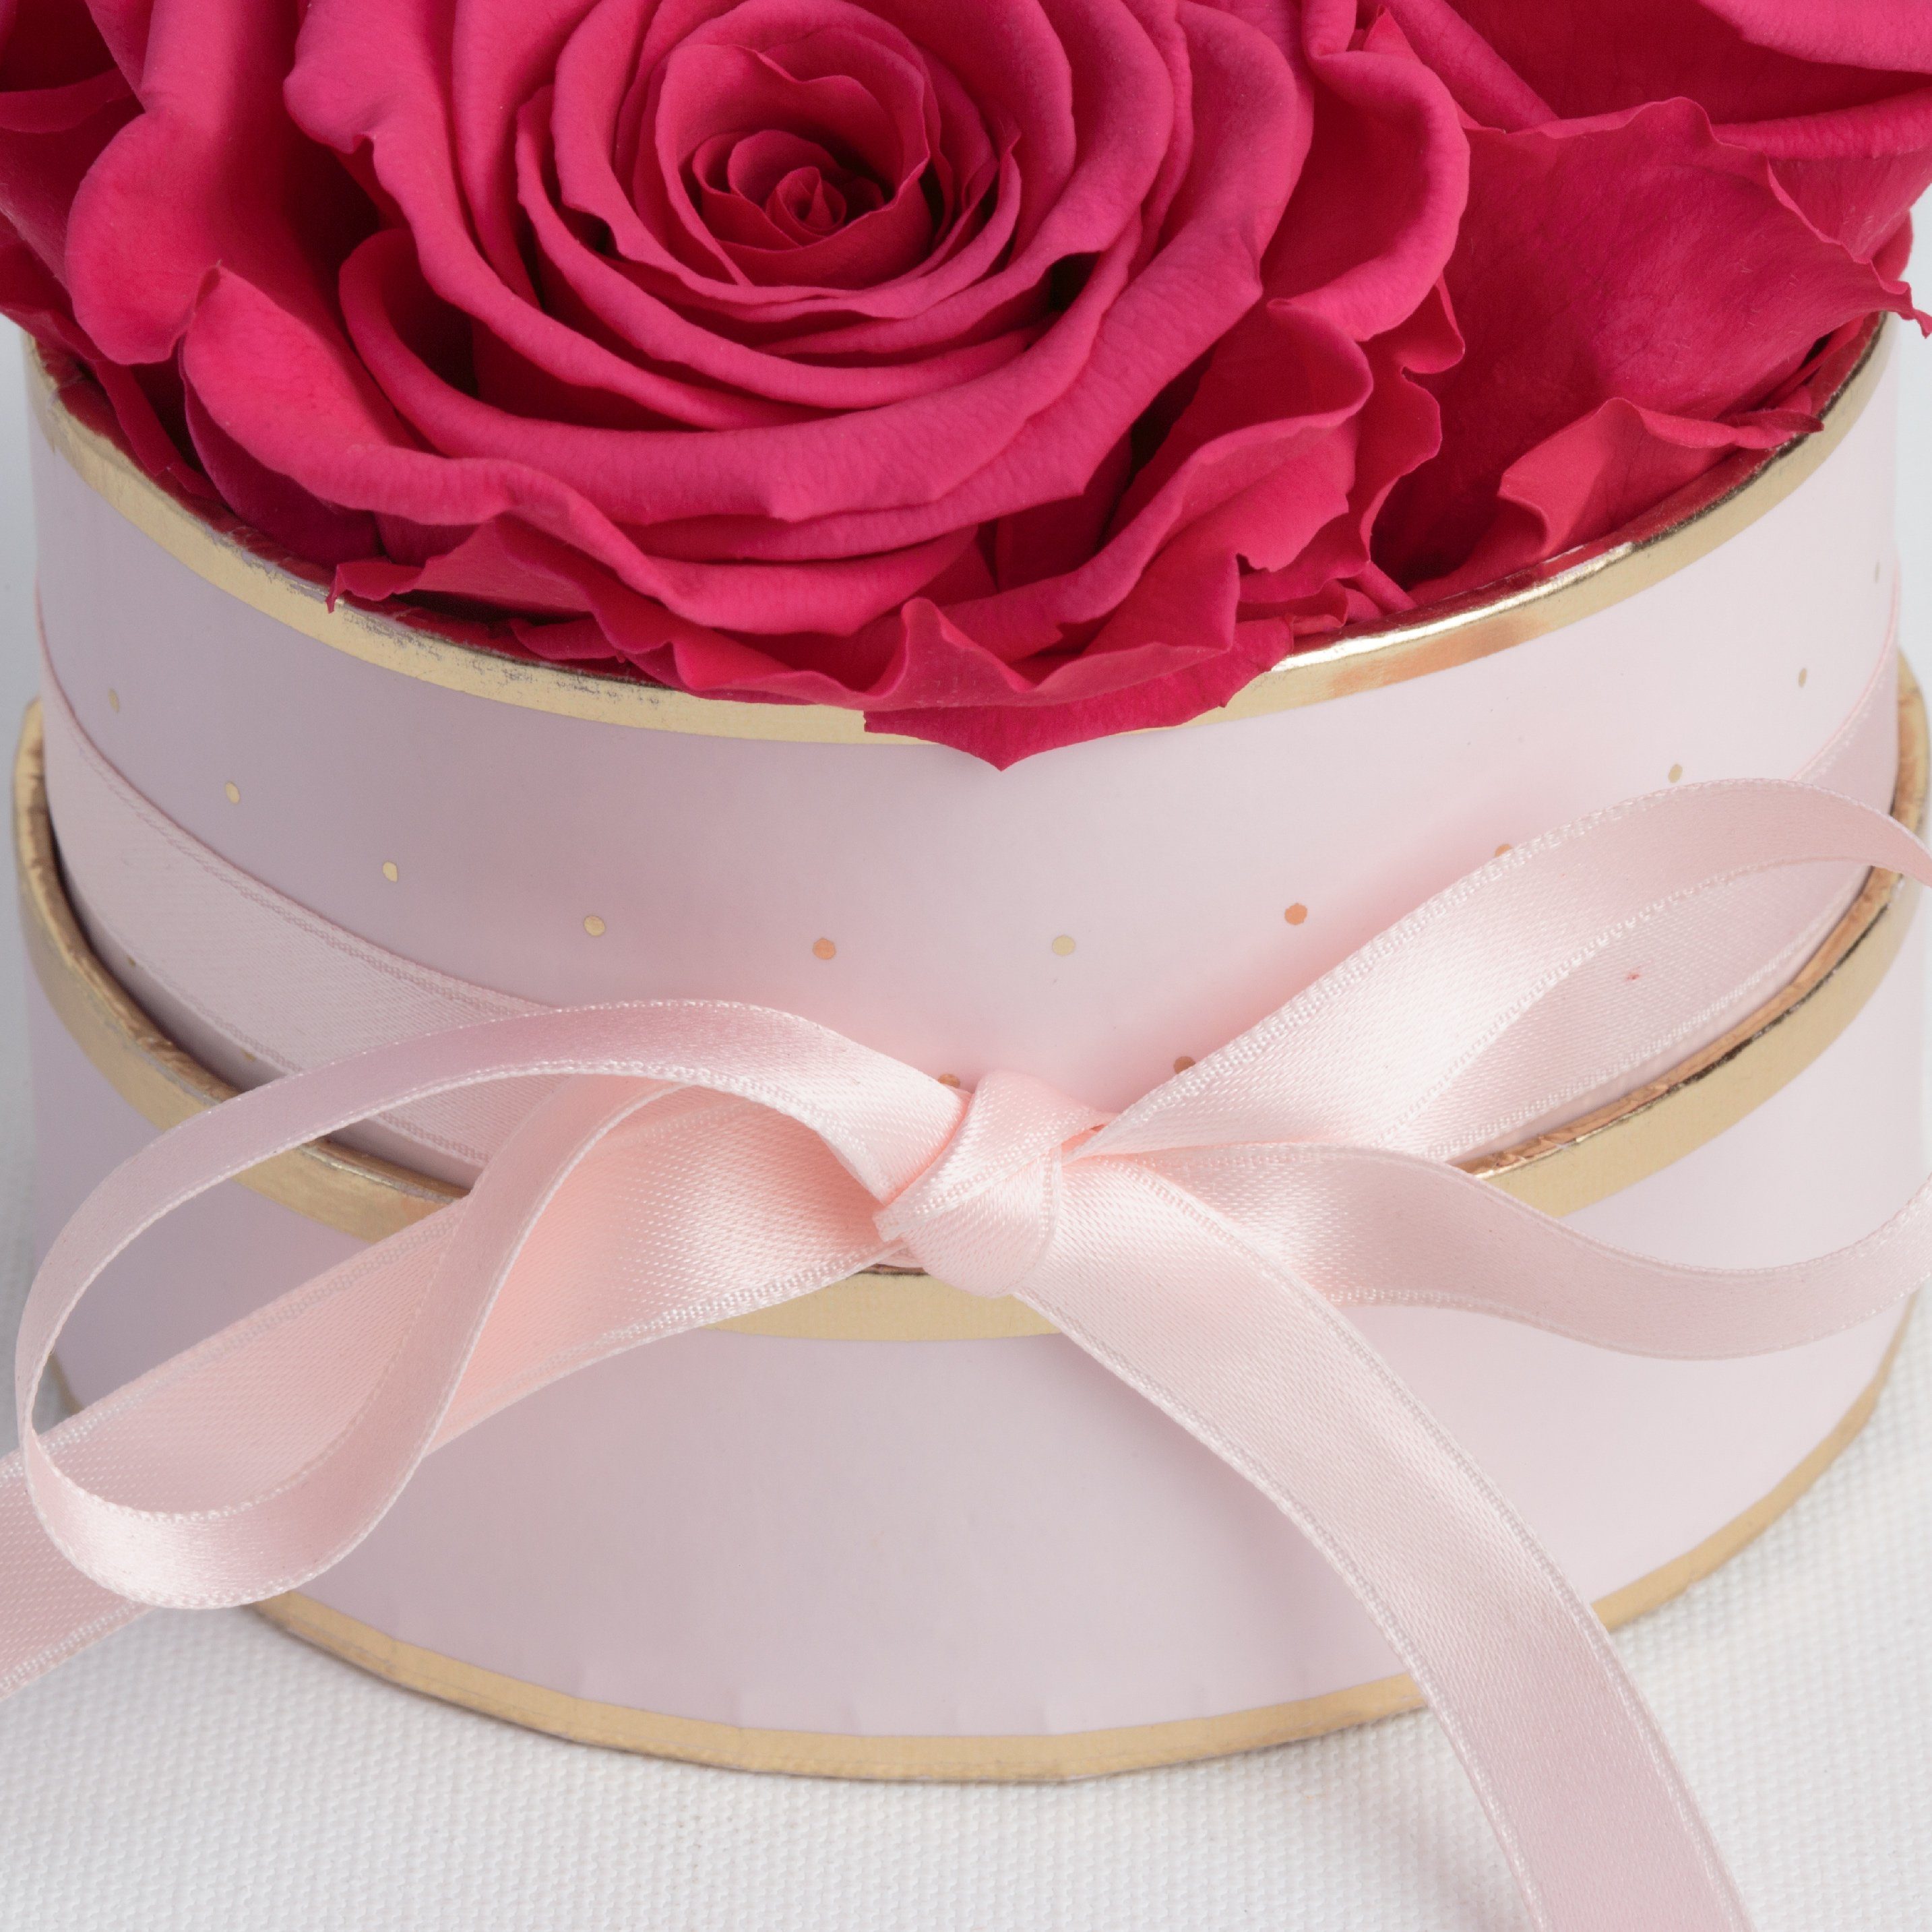 Rose, Höhe konservierte Rosen Heidelberg, konservierte SCHULZ für echte rund Infinity Frauen 10 Rosenbox 4 Kunstblume cm, Pink Geschenk Rosen ROSEMARIE rosa